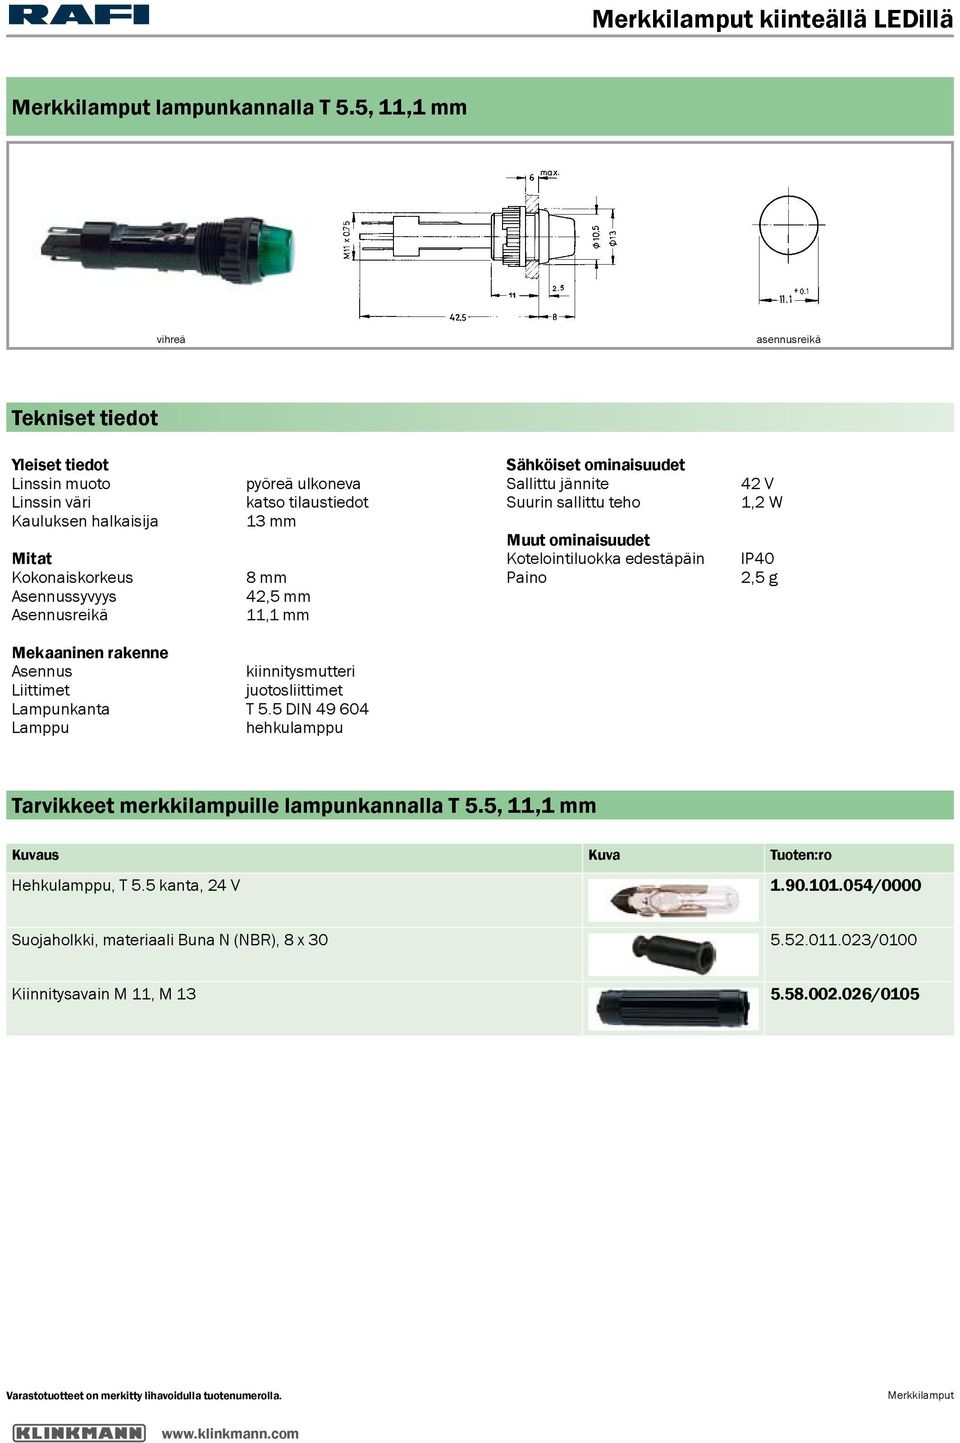 mm 11,1 mm Sähköiset ominaisuudet Muut ominaisuudet Kotelointiluokka edestäpäin Paino 42 V 1,2 W IP40 2,5 g Mekaaninen rakenne Asennus kiinnitysmutteri